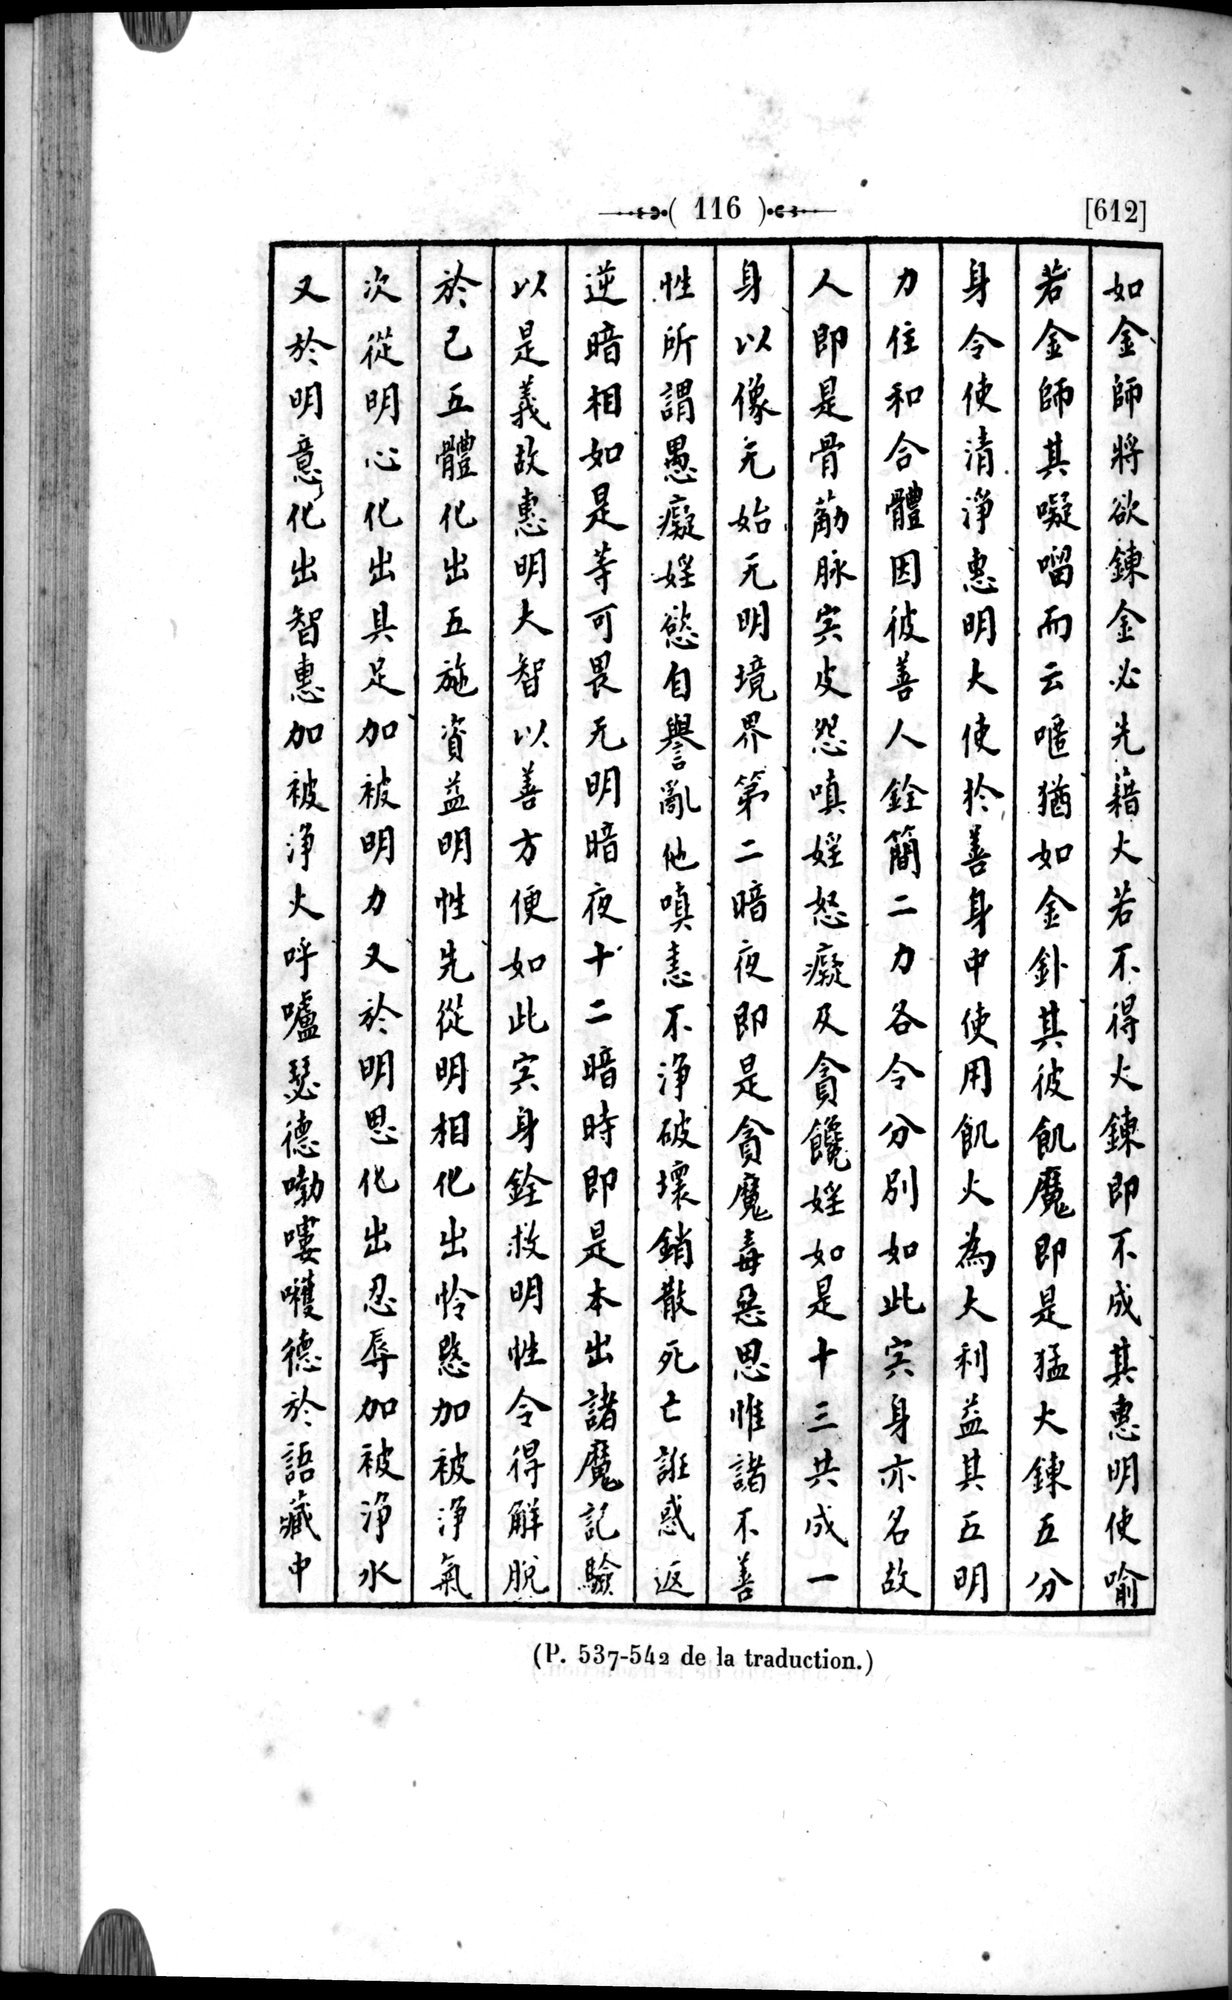 Un traité manichéen retrouvé en Chine : vol.1 / Page 126 (Grayscale High Resolution Image)